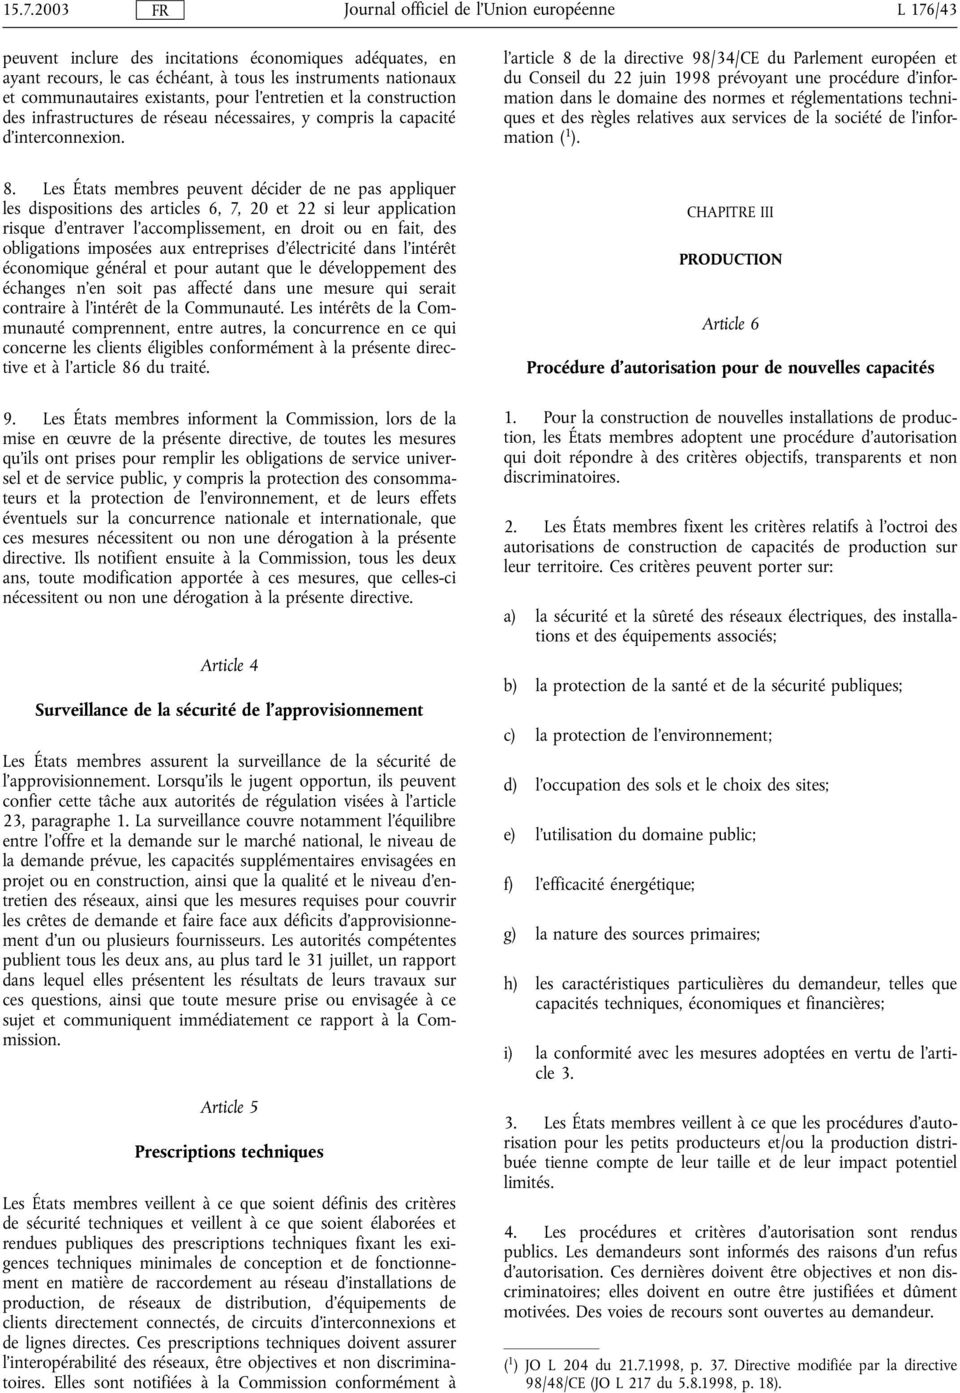 l'article 8 de la directive 98/34/CE du Parlement européen et du Conseil du 22 juin 1998 prévoyant une procédure d'information dans le domaine des normes et réglementations techniques et des règles